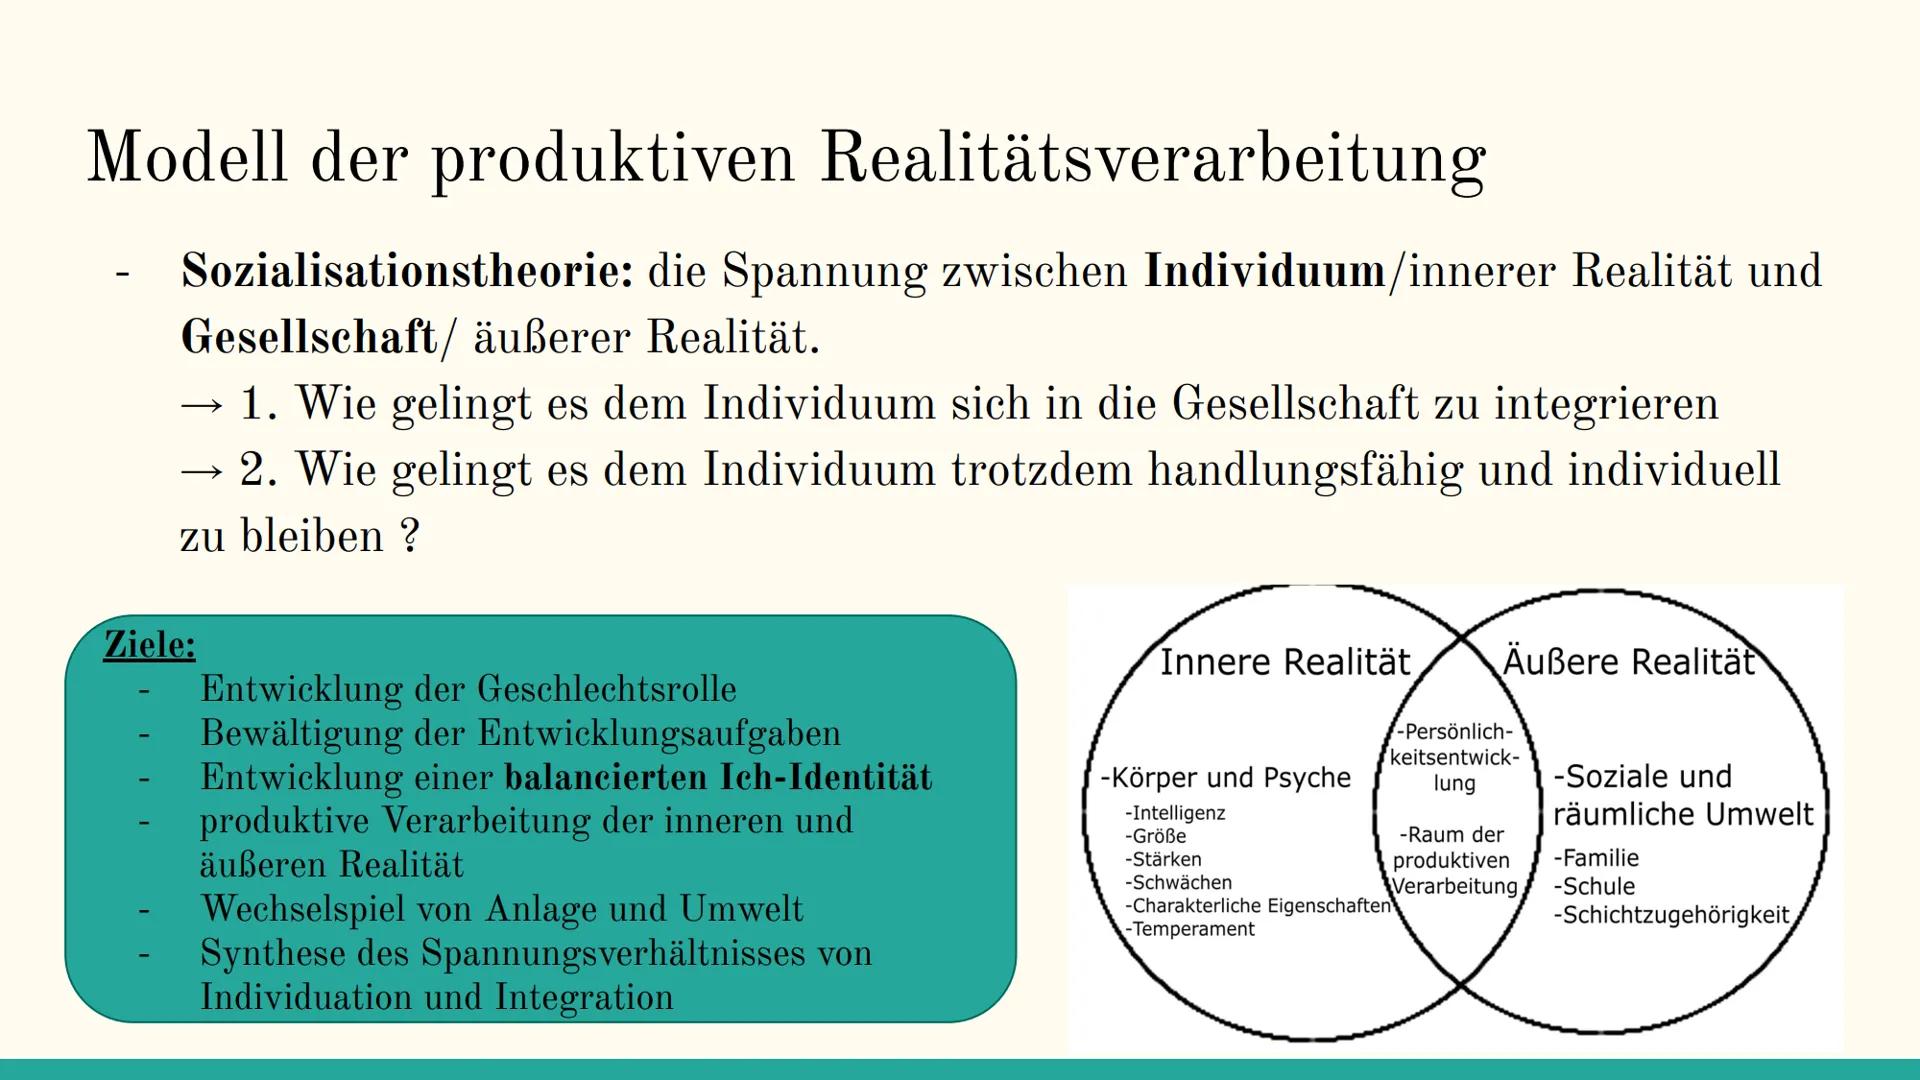 Das Modell der
produktiven
Realitätsverarbeitung
Nach Klaus Hurrelmann Inhaltsverzeichnis
1. Grundannahmen
2. Produktive Realitätsverarbeitu